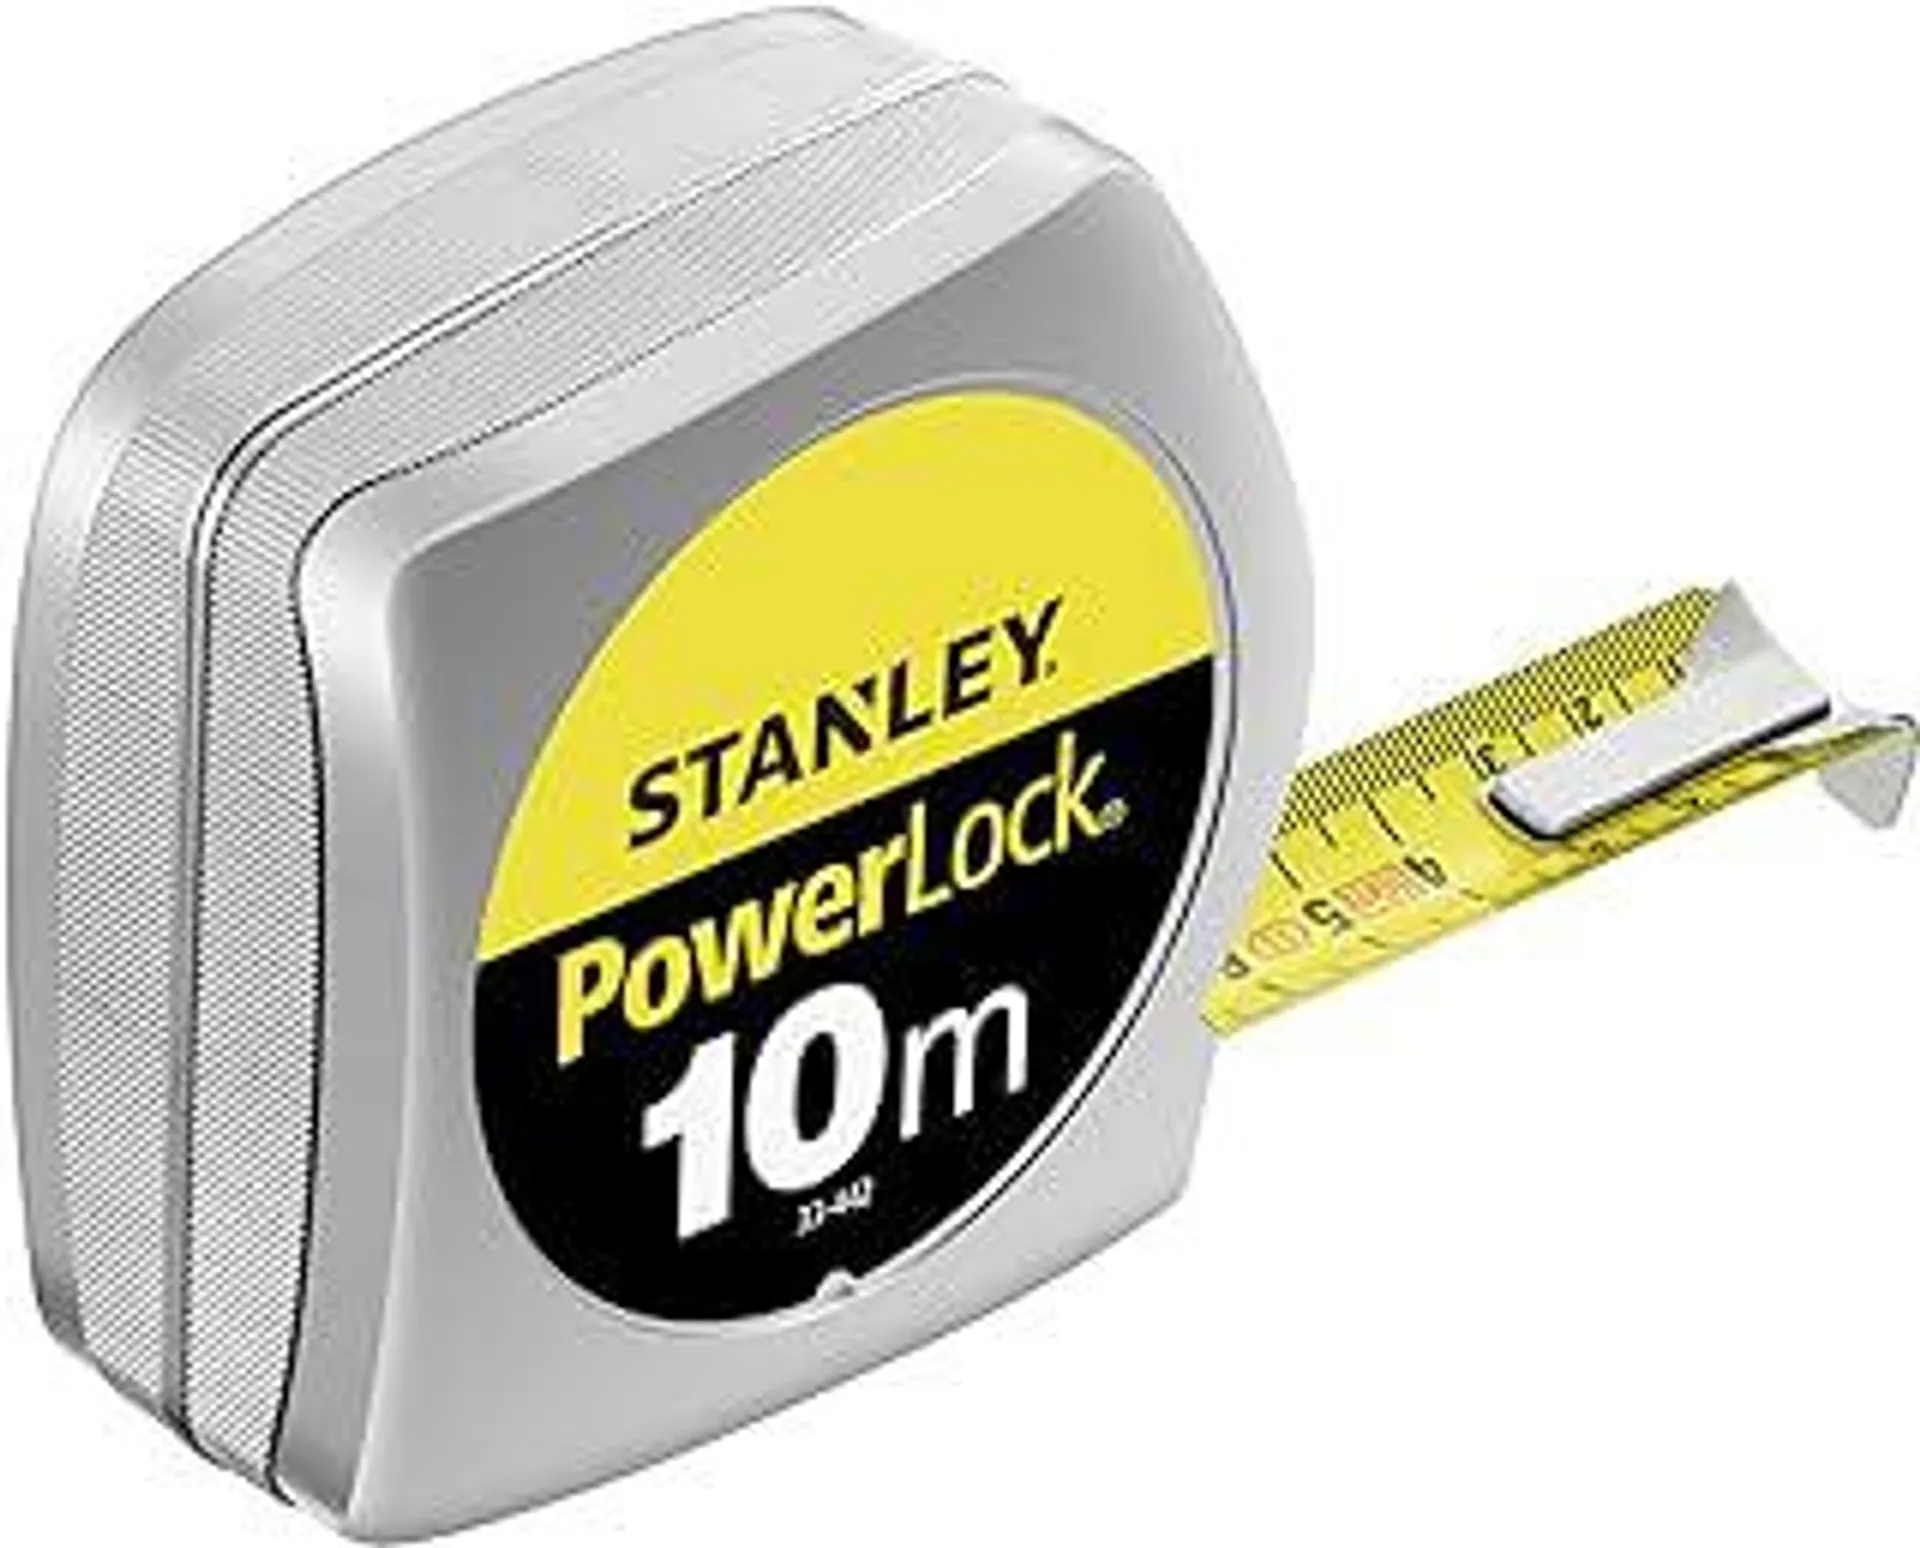 0-33-442 Power lock Tape Measure, Silver